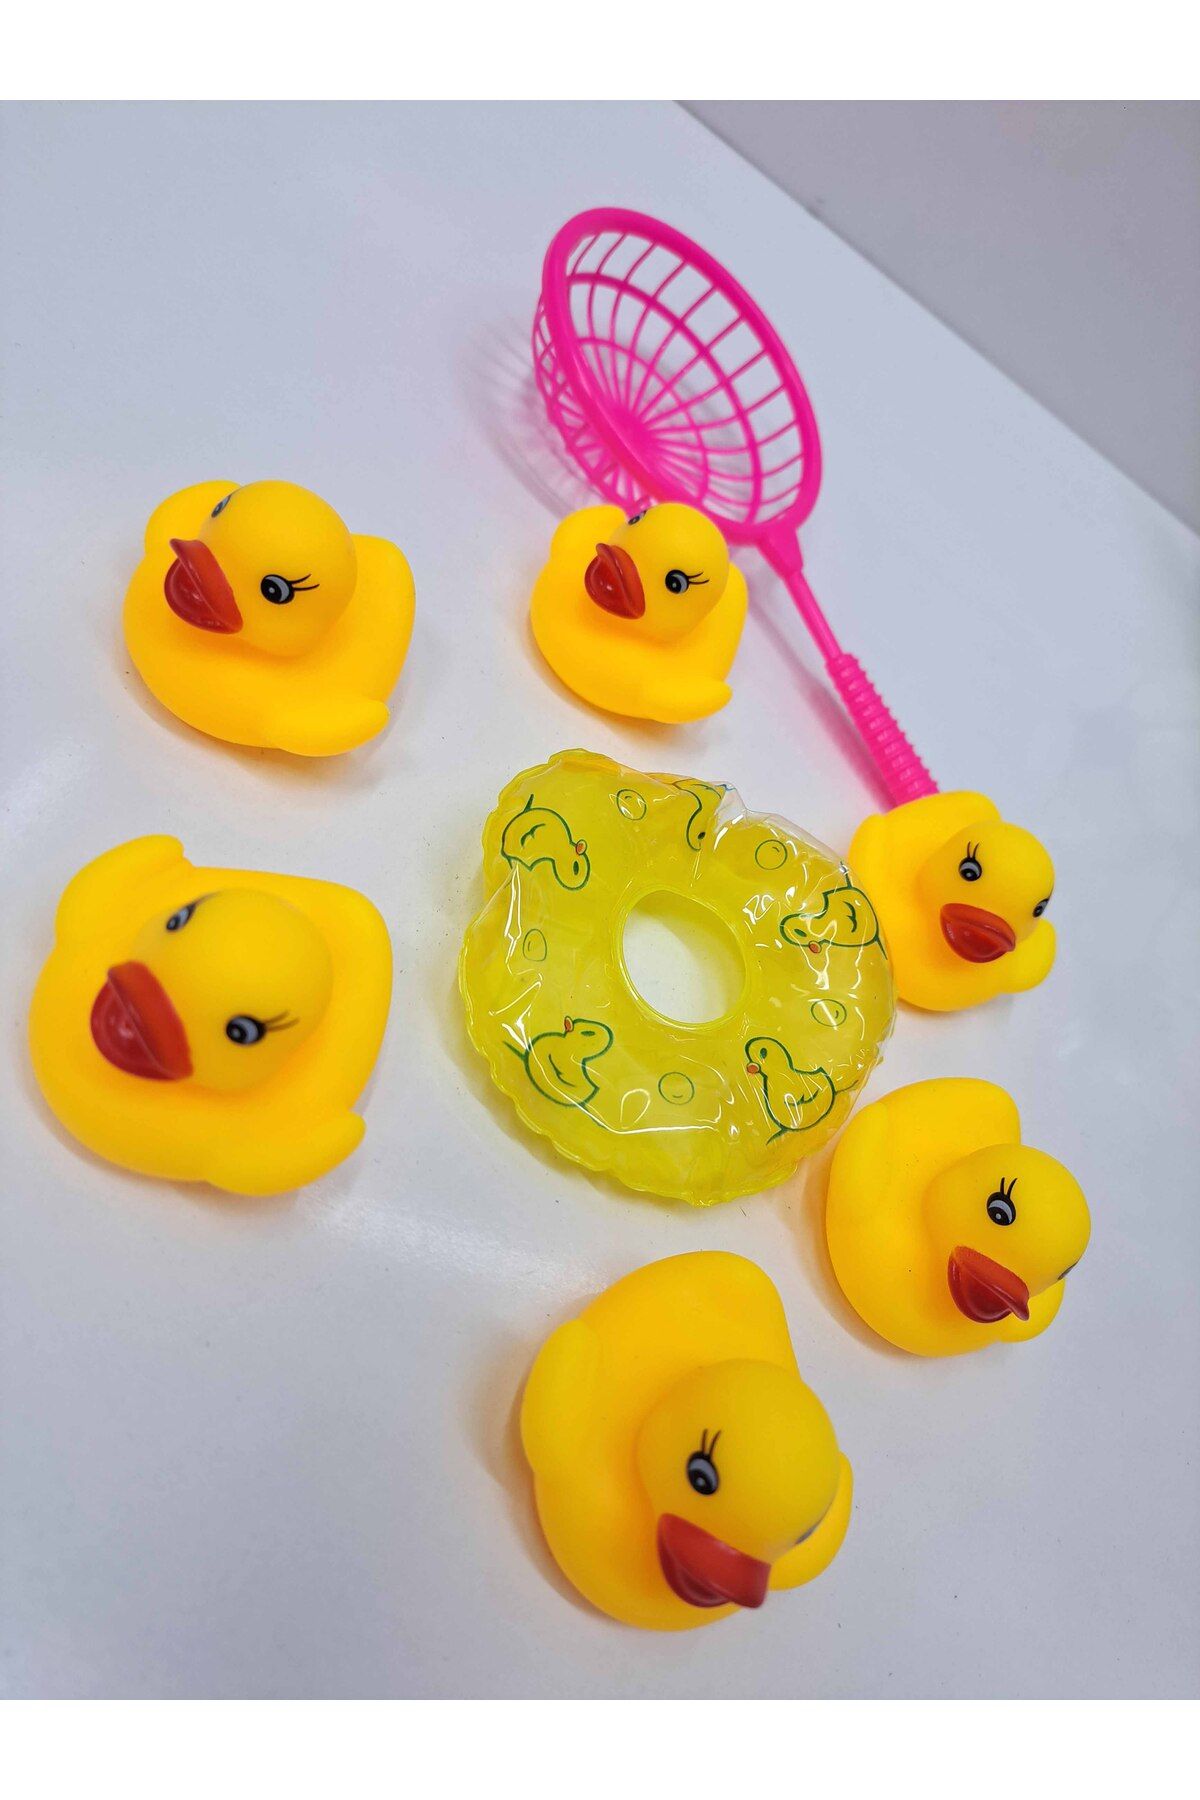 ALYTOYS Oyuncak Ördekler Havuz Küvet Ördeği Banyo Oyuncakları Su Oyuncakları 8 Parça 16X15 cm